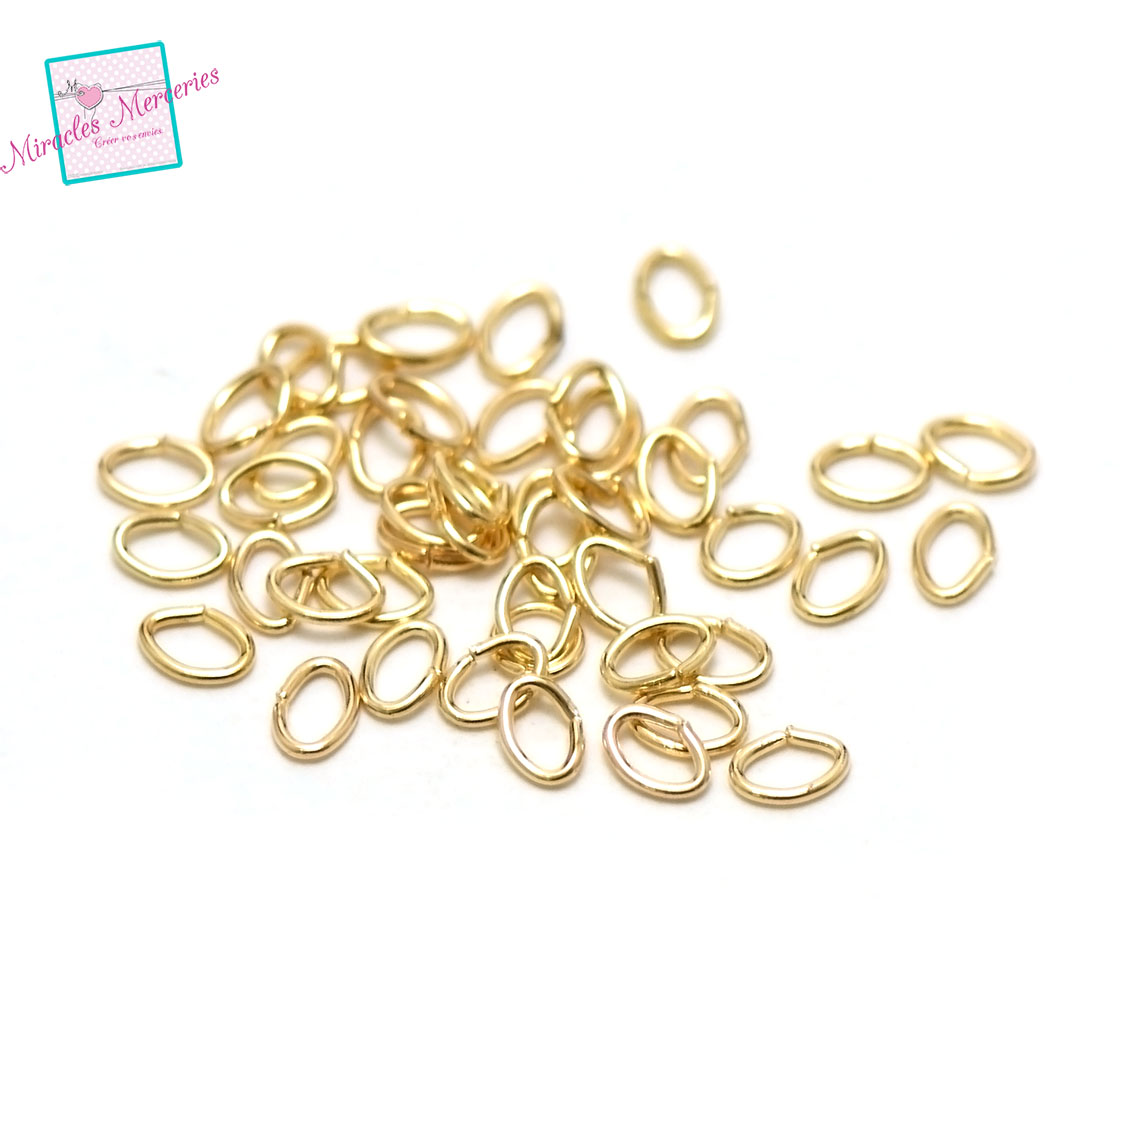 100 anneaux brisés oval 4x3 mm, doré